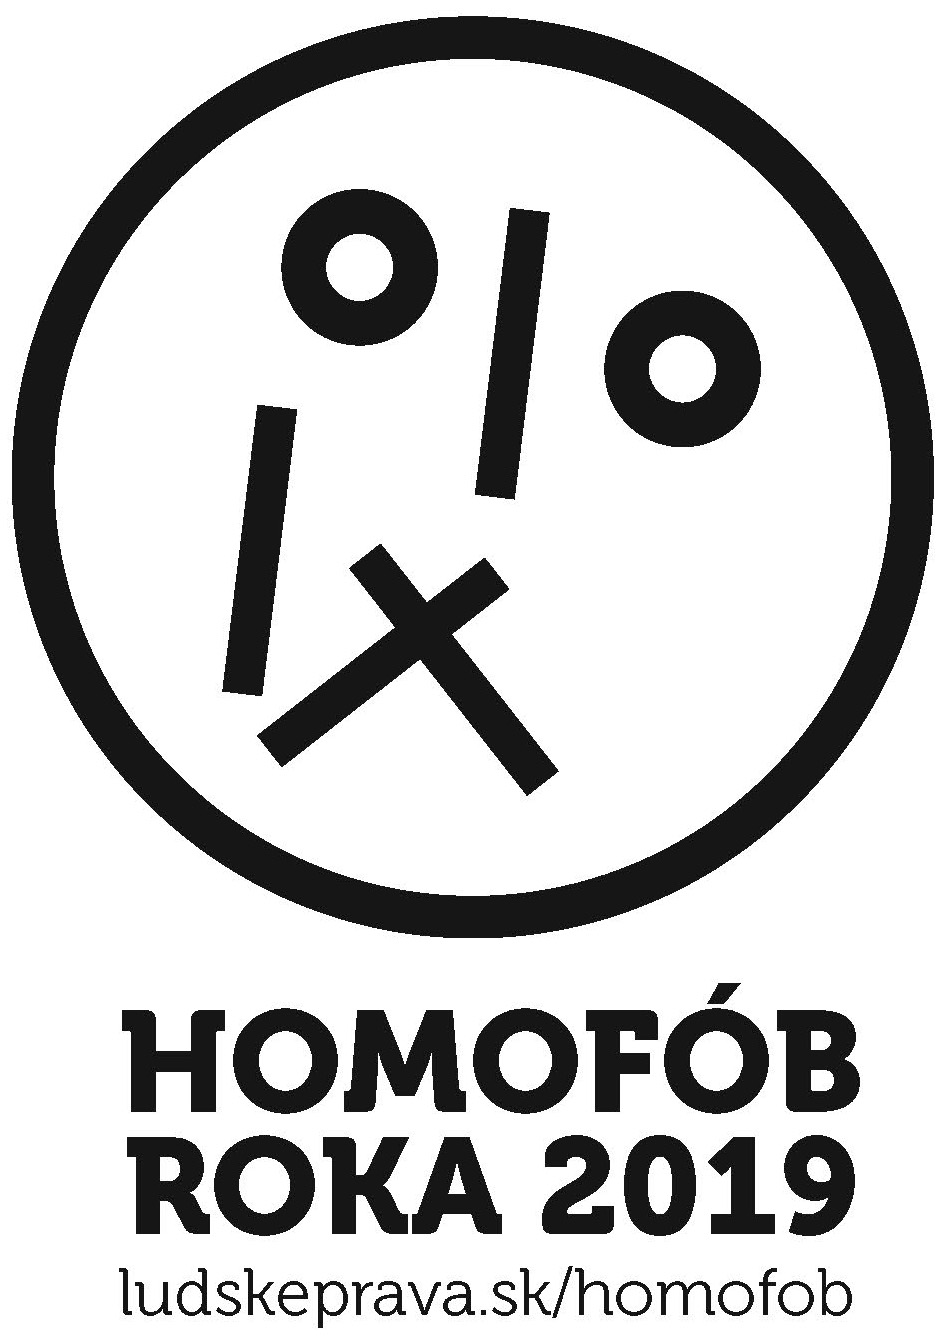 Homofob roka 2019 logo